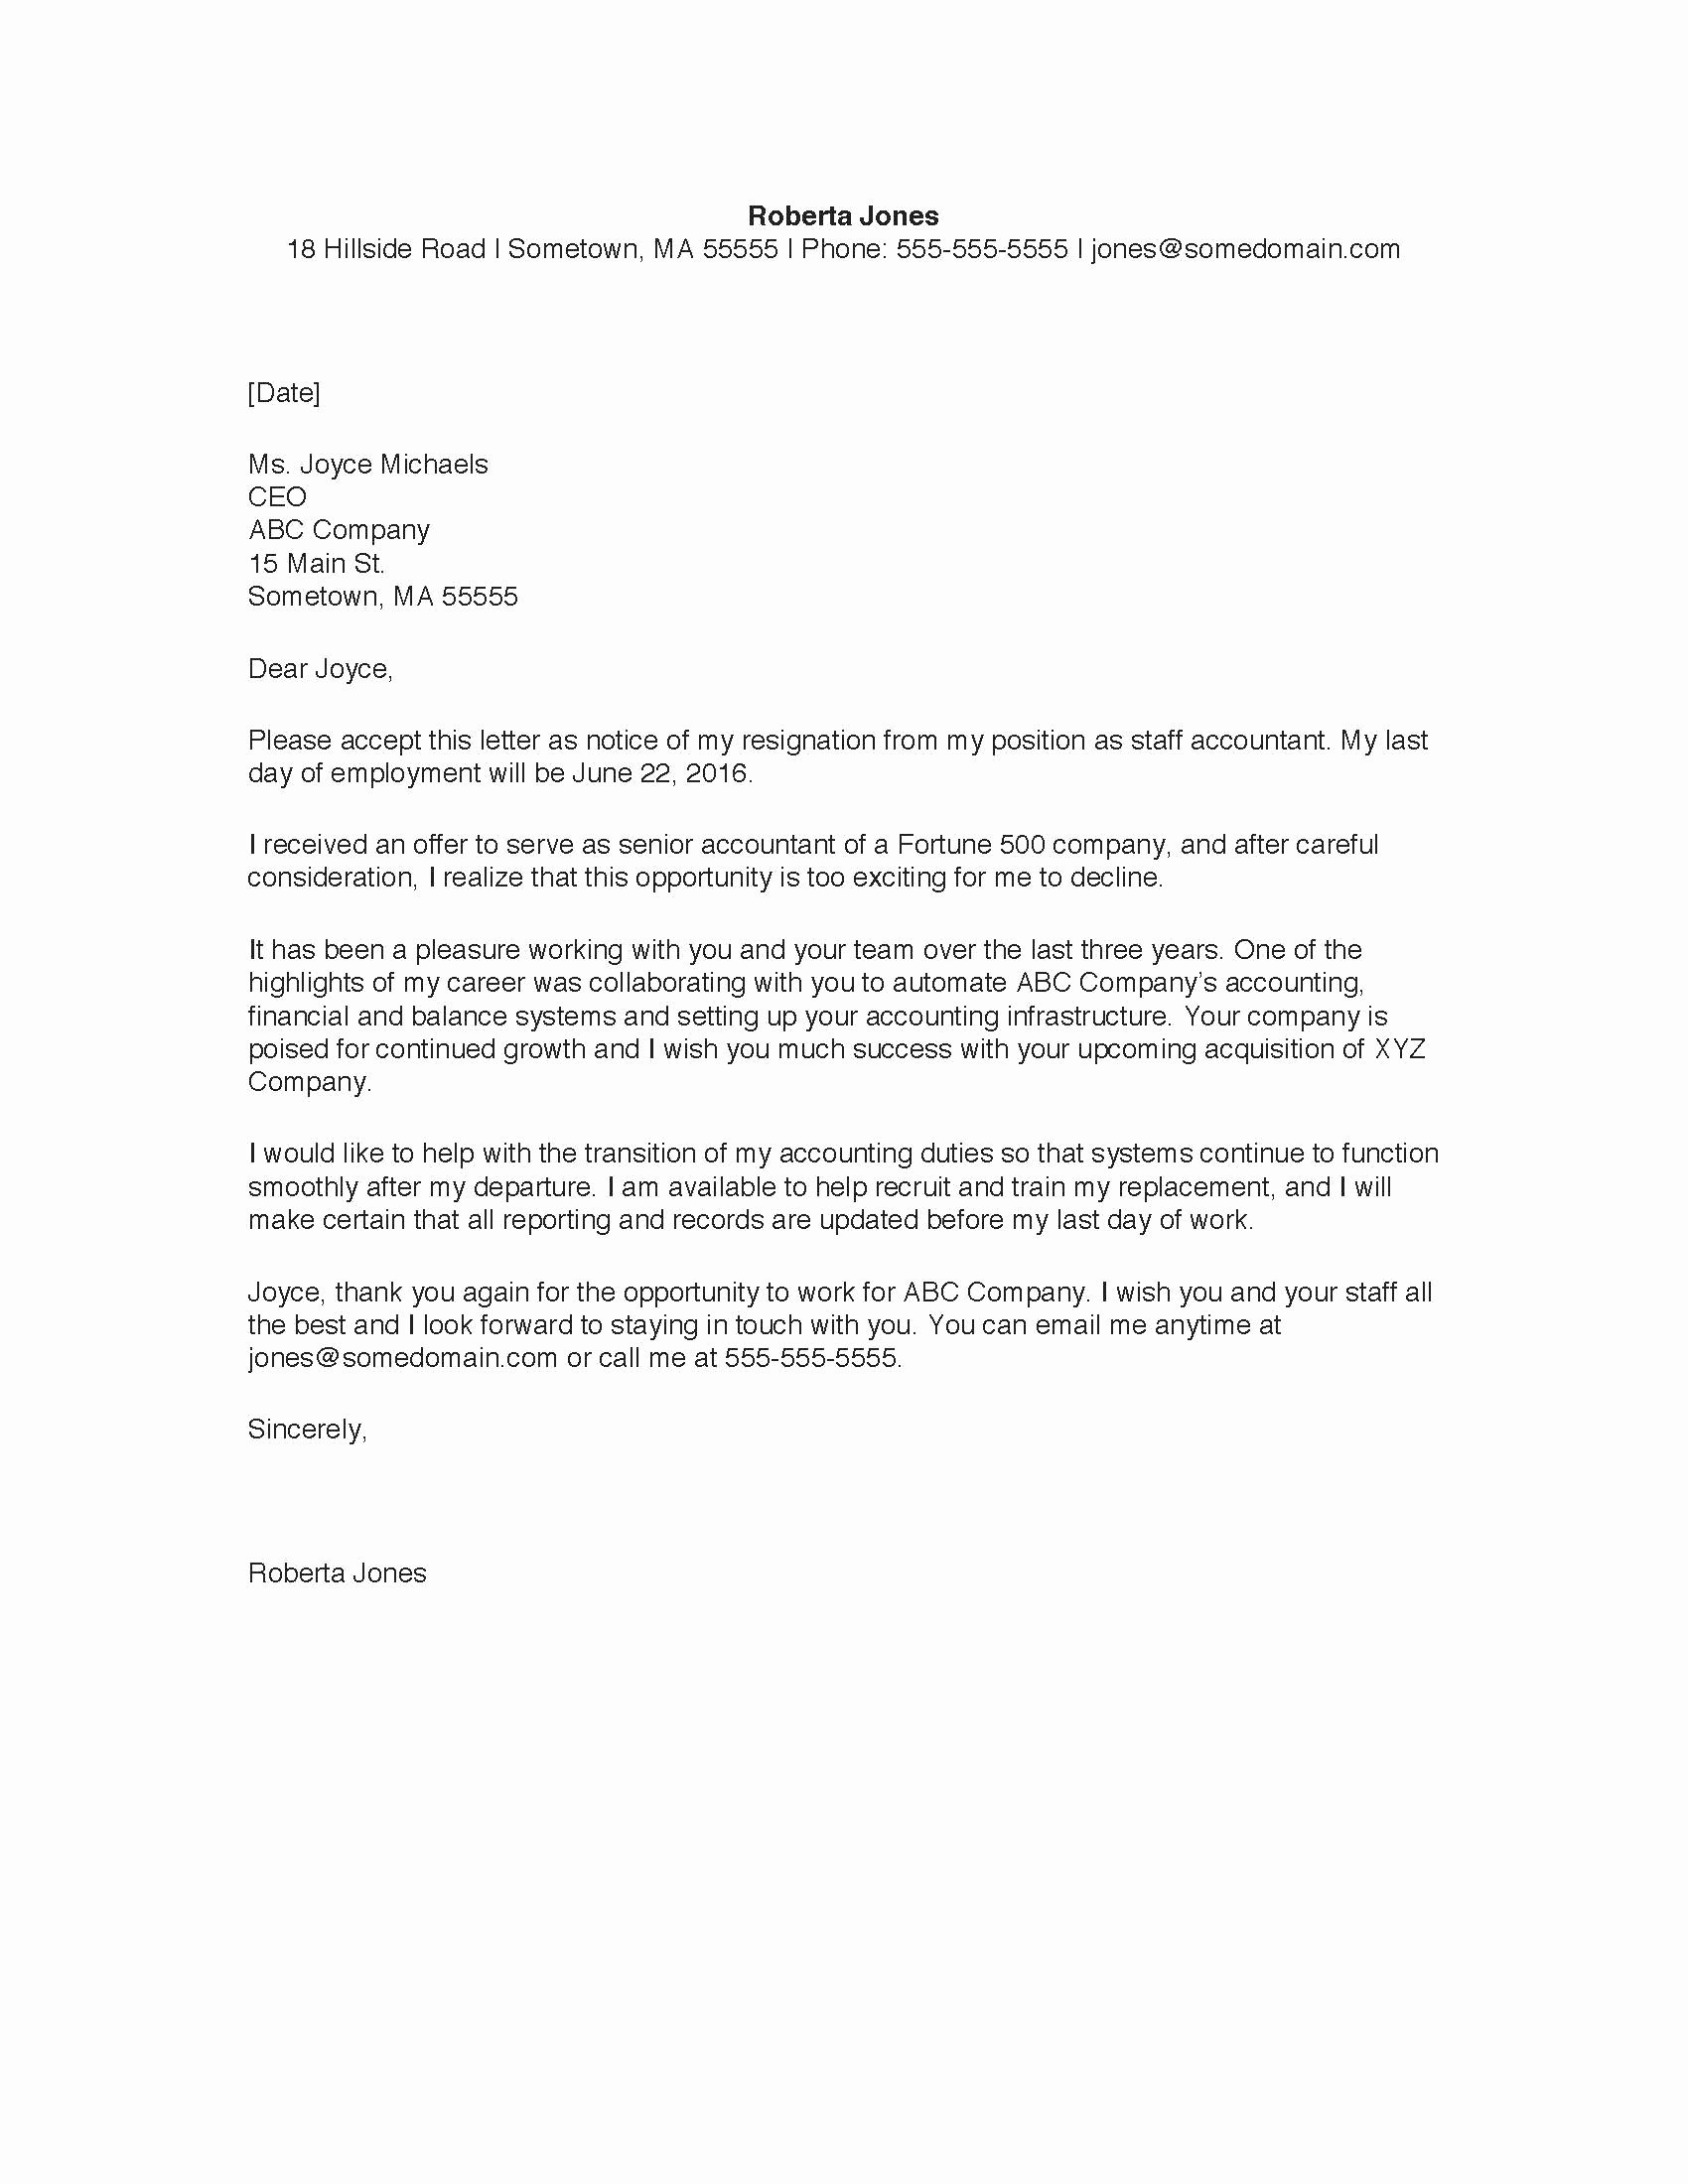 Resignation Letter for Work Fresh Resignation Letter